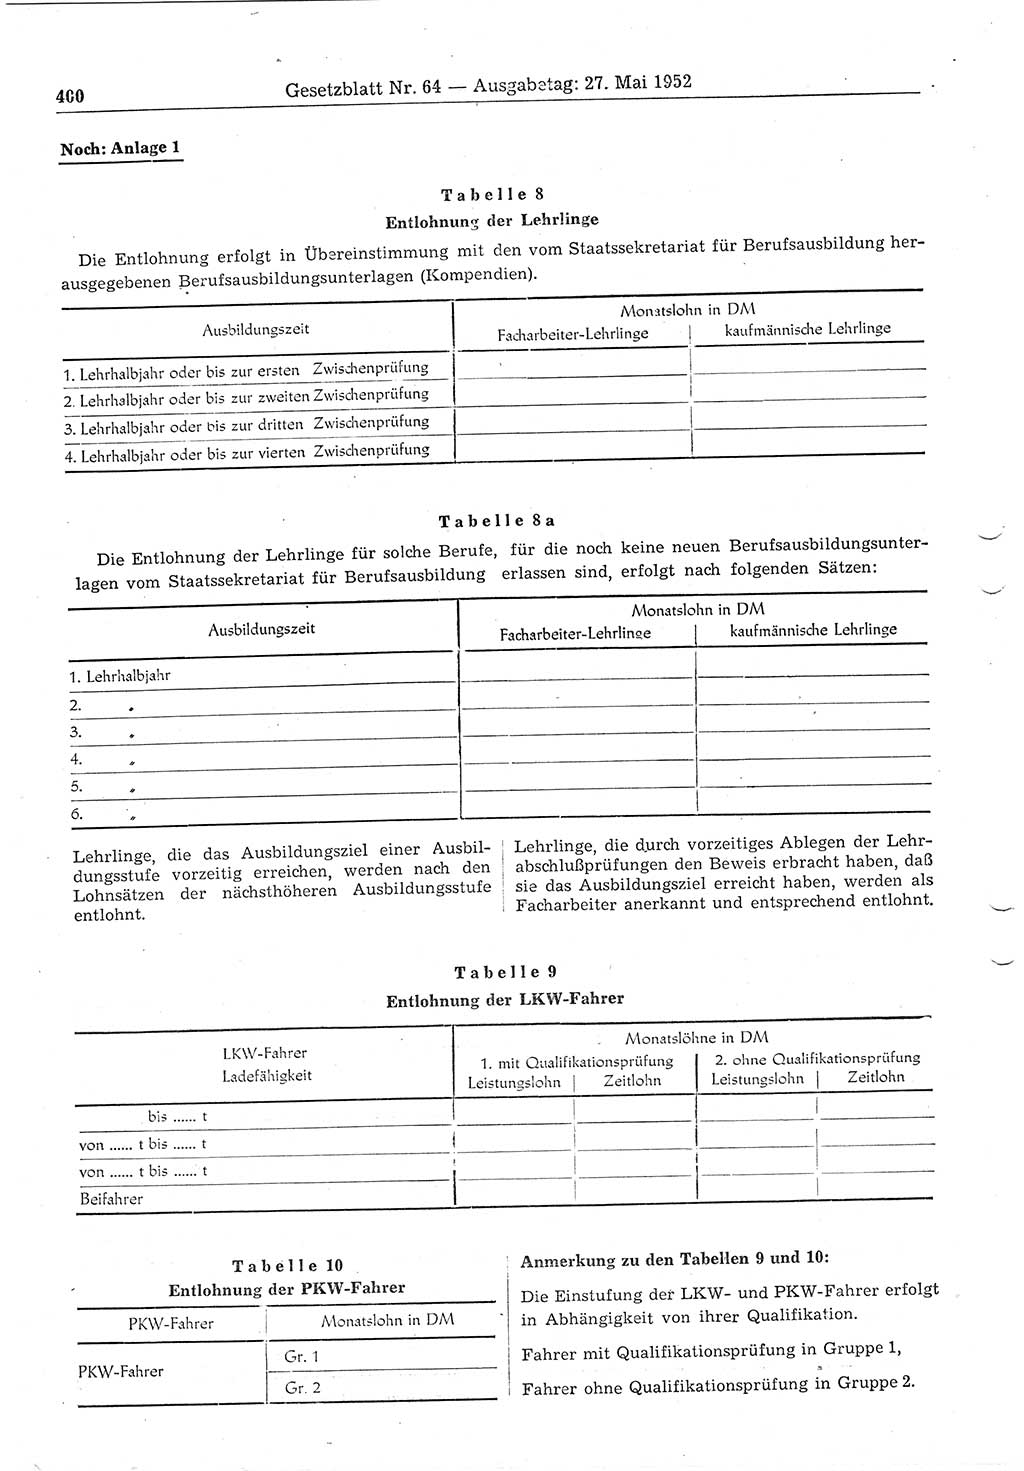 Gesetzblatt (GBl.) der Deutschen Demokratischen Republik (DDR) 1952, Seite 400 (GBl. DDR 1952, S. 400)